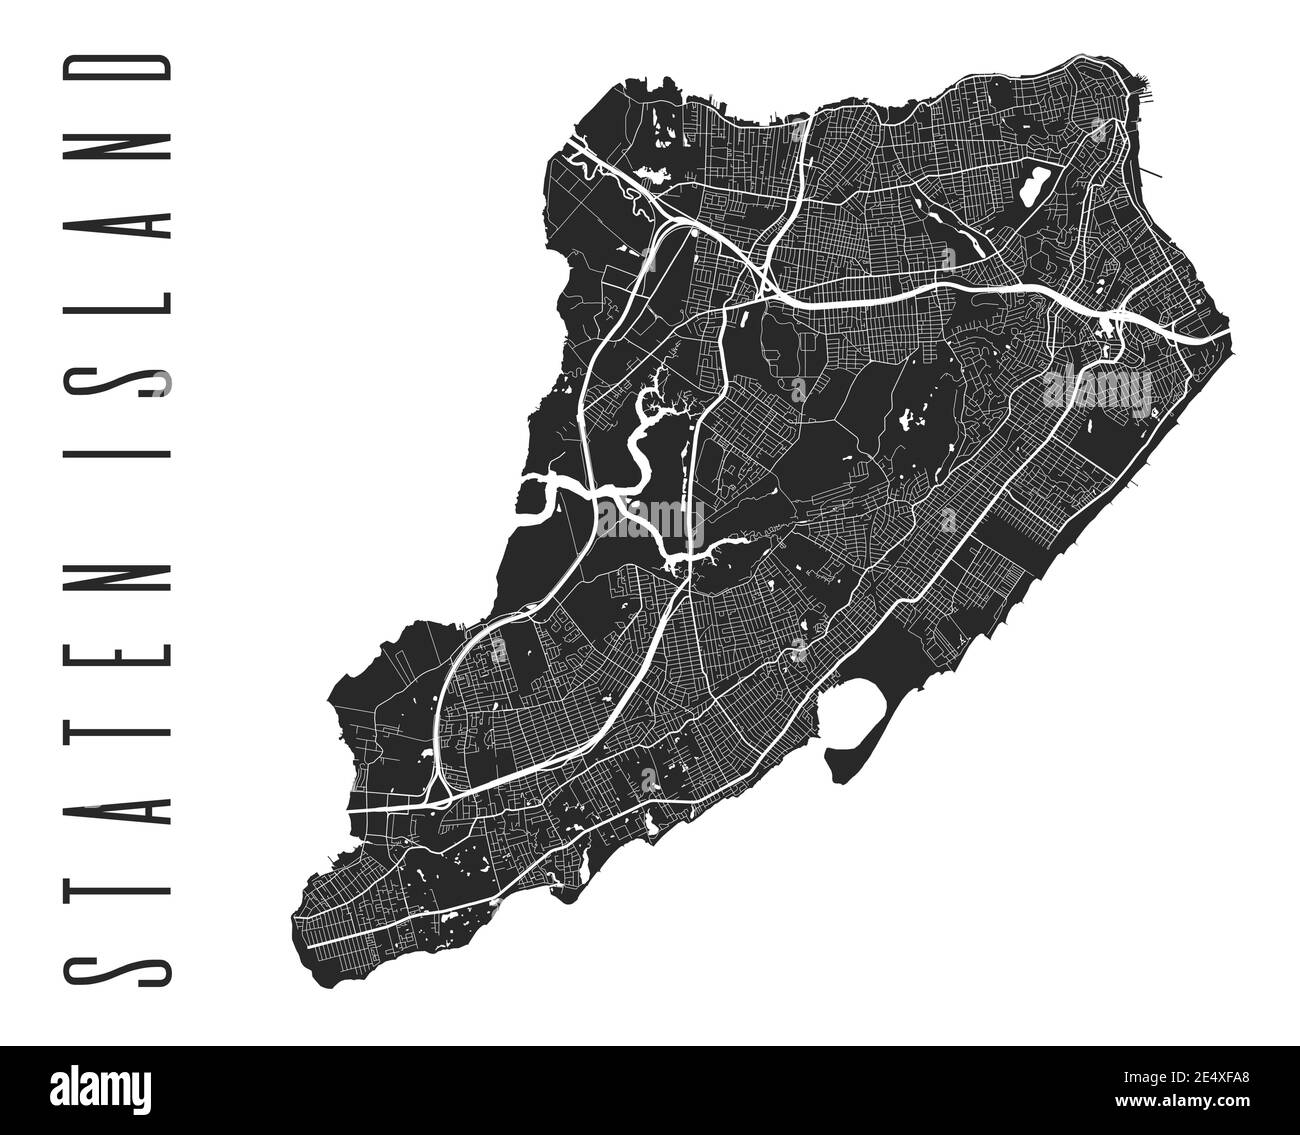 Poster della mappa dell'isola di Staten. Mappa stradale di New York City borough. Paesaggio urbano aria panorama silhouette vista aerea, stile tipografico. San Giorgio, Tompkinsville Illustrazione Vettoriale